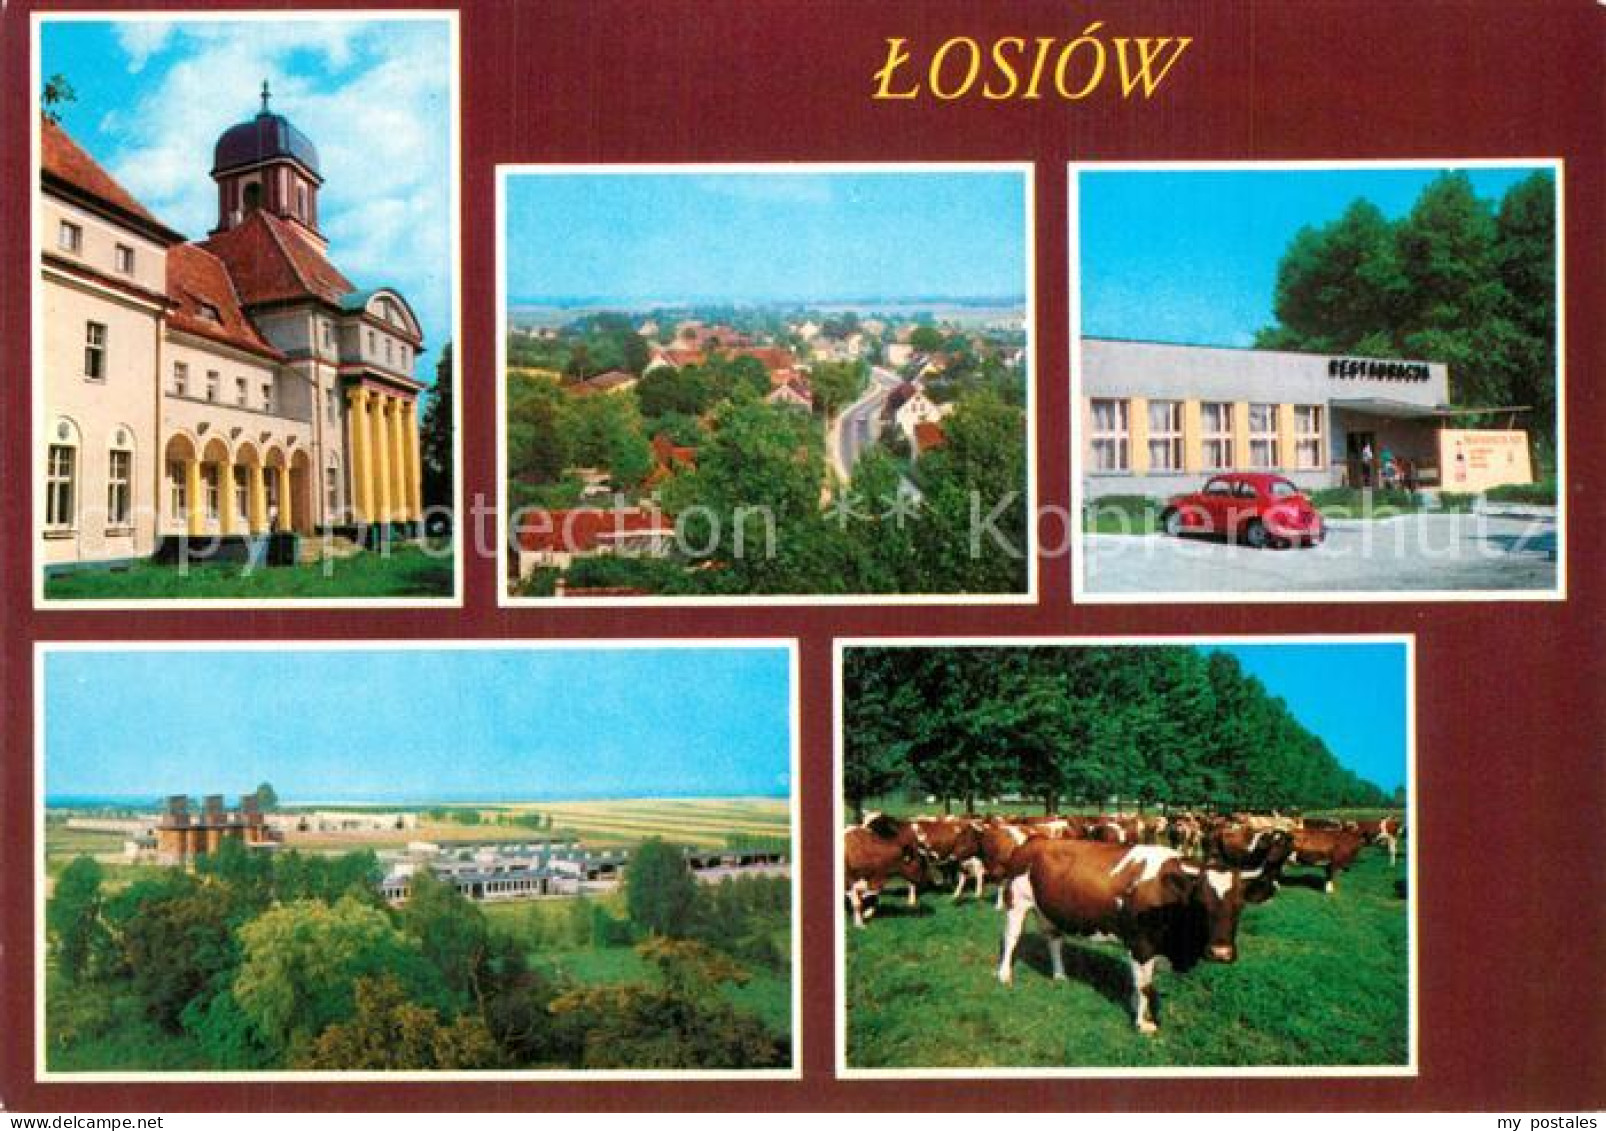 73607632 Losiow Lossen Losiow - Poland